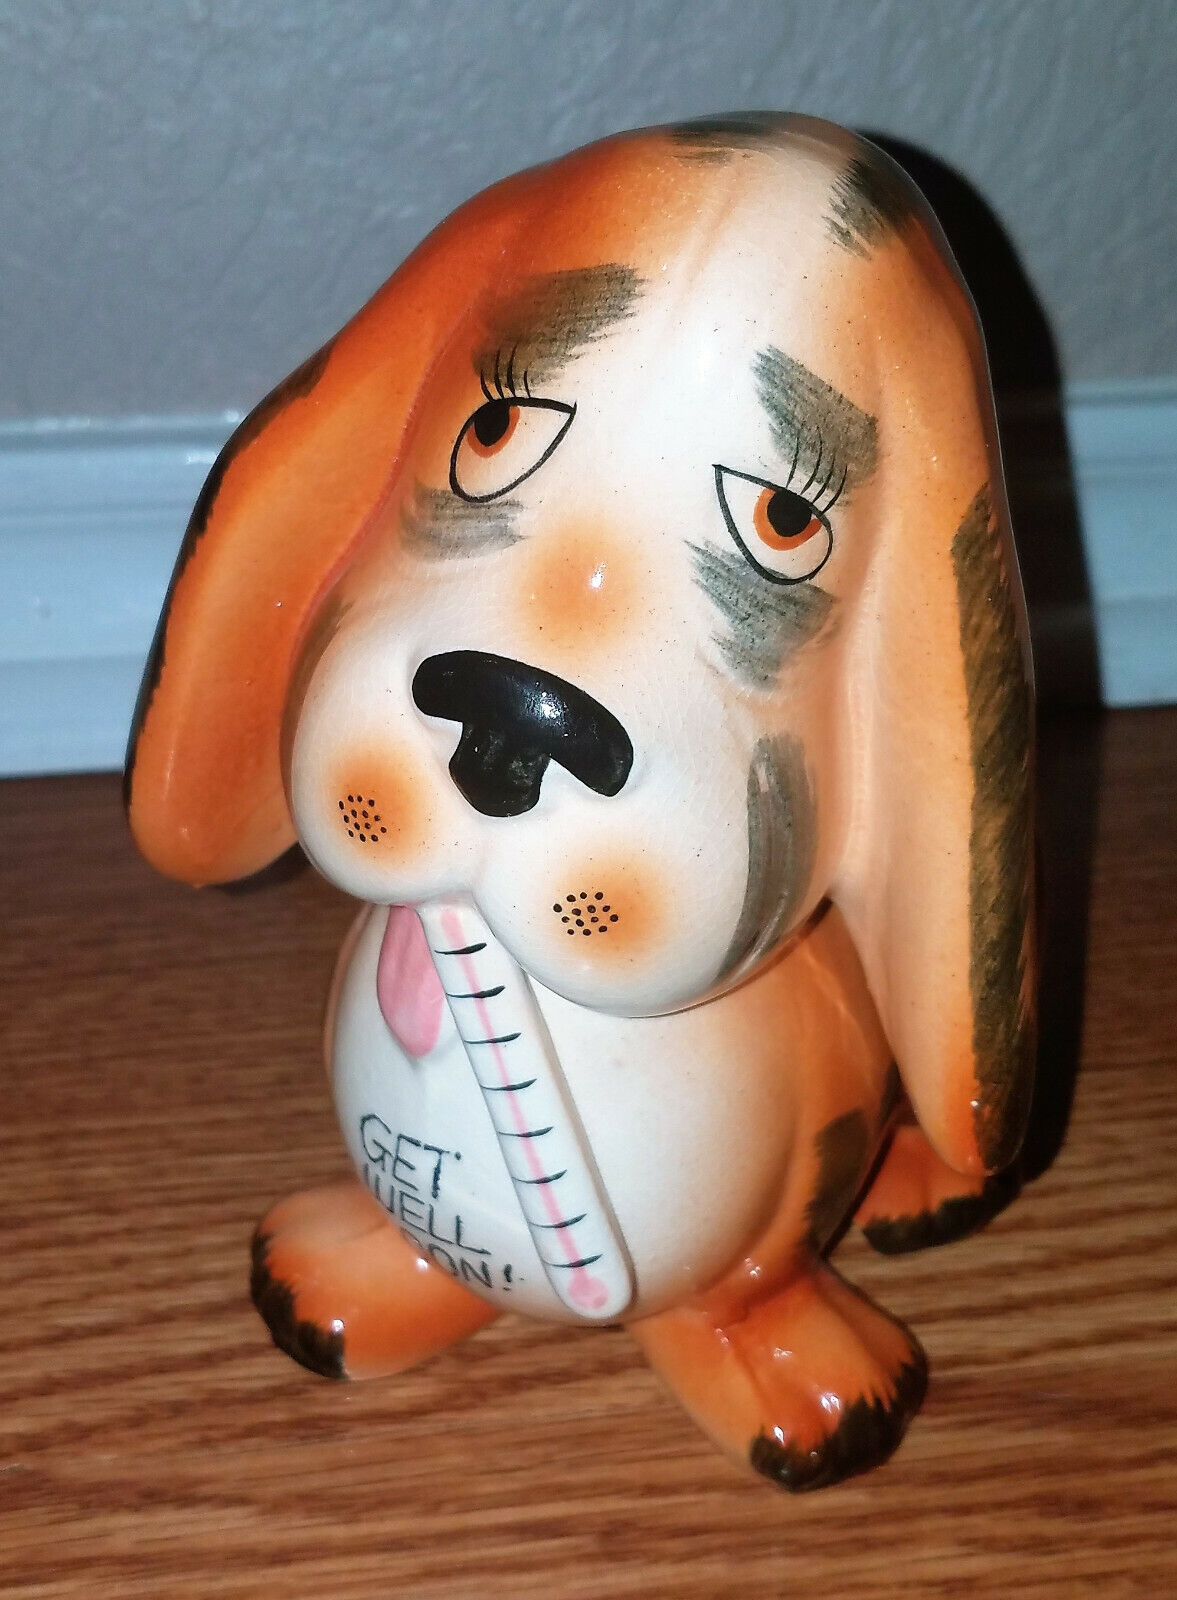 Dog Rubens Original Basset Hound Planter Cachepot Ceramic Get Well Soon Japan